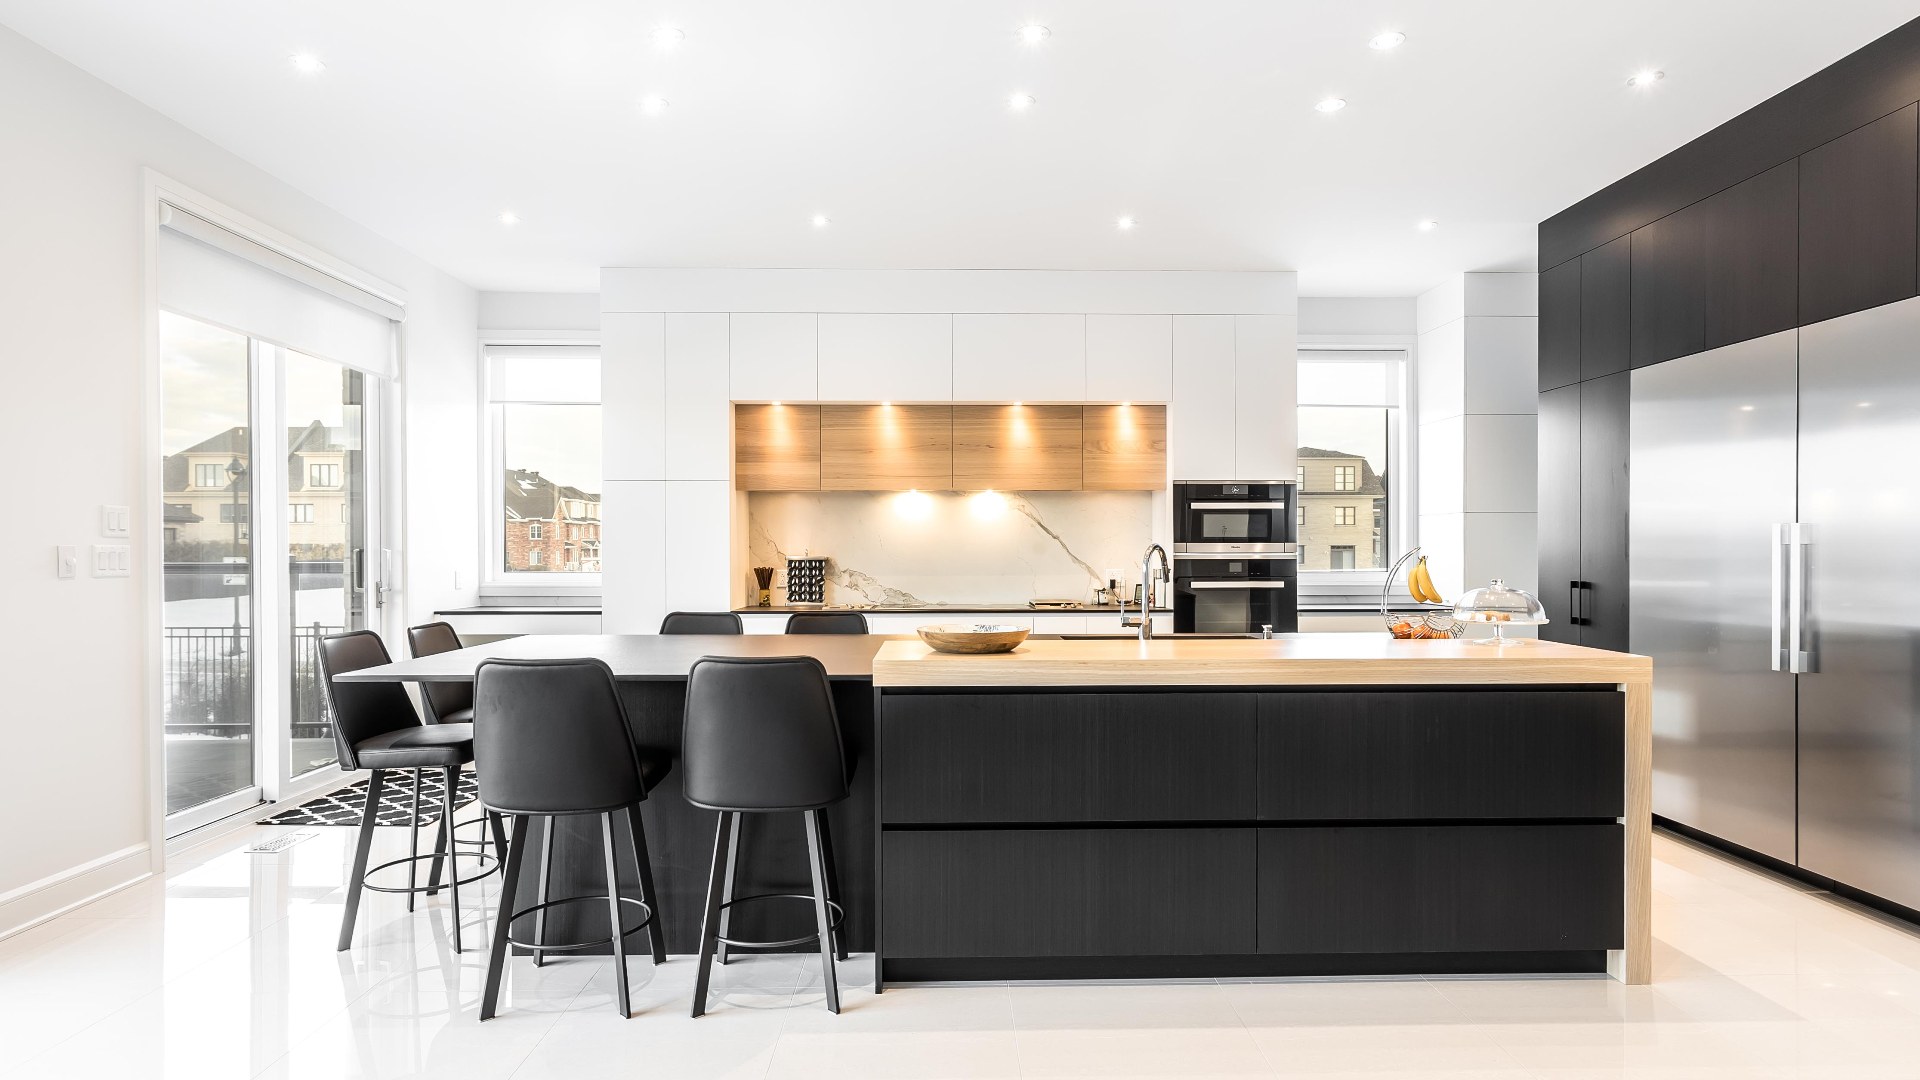 Cuisine moderne noire et blanche composée d'armoires en Thermoform accentuées de bois de chêne. Des luminaires sont iintégrés aux meubles de cuisines pour éclairer les plans de travail et comptoirs directement.